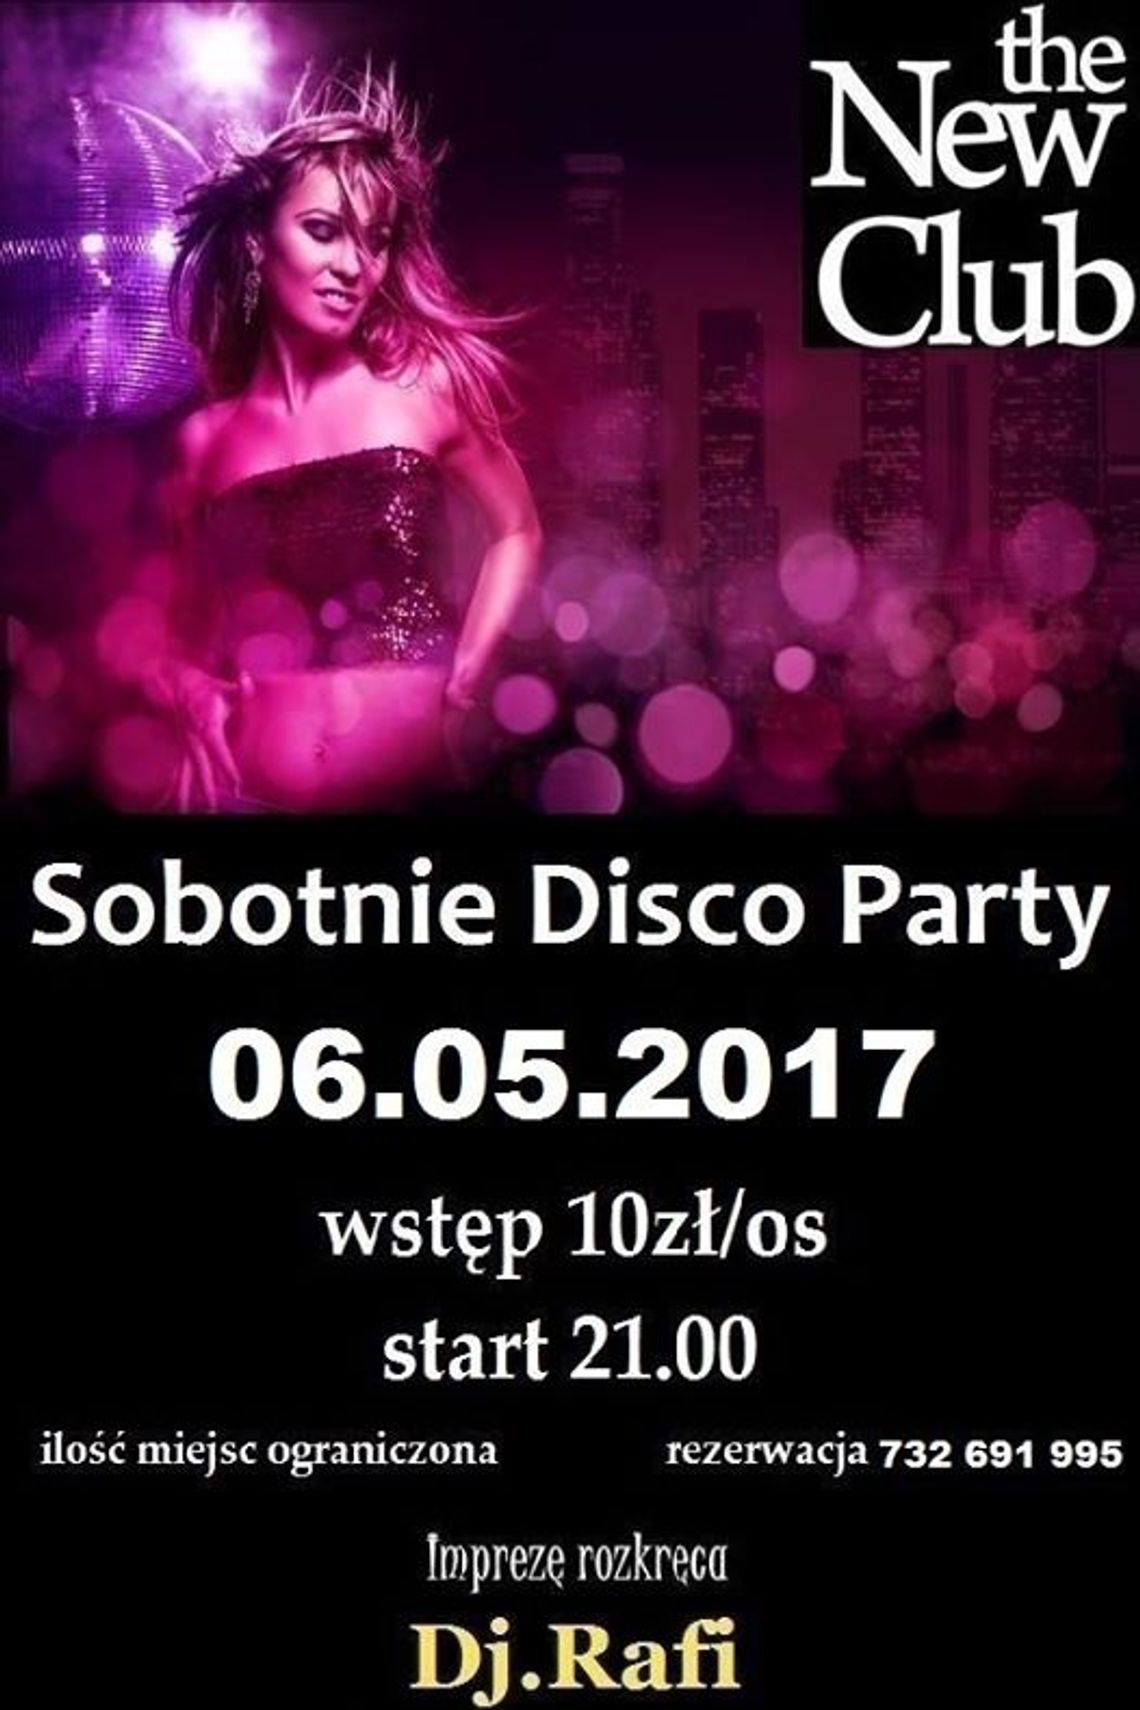 Sobotnie Disco Party do New Club z Dj.Rafi